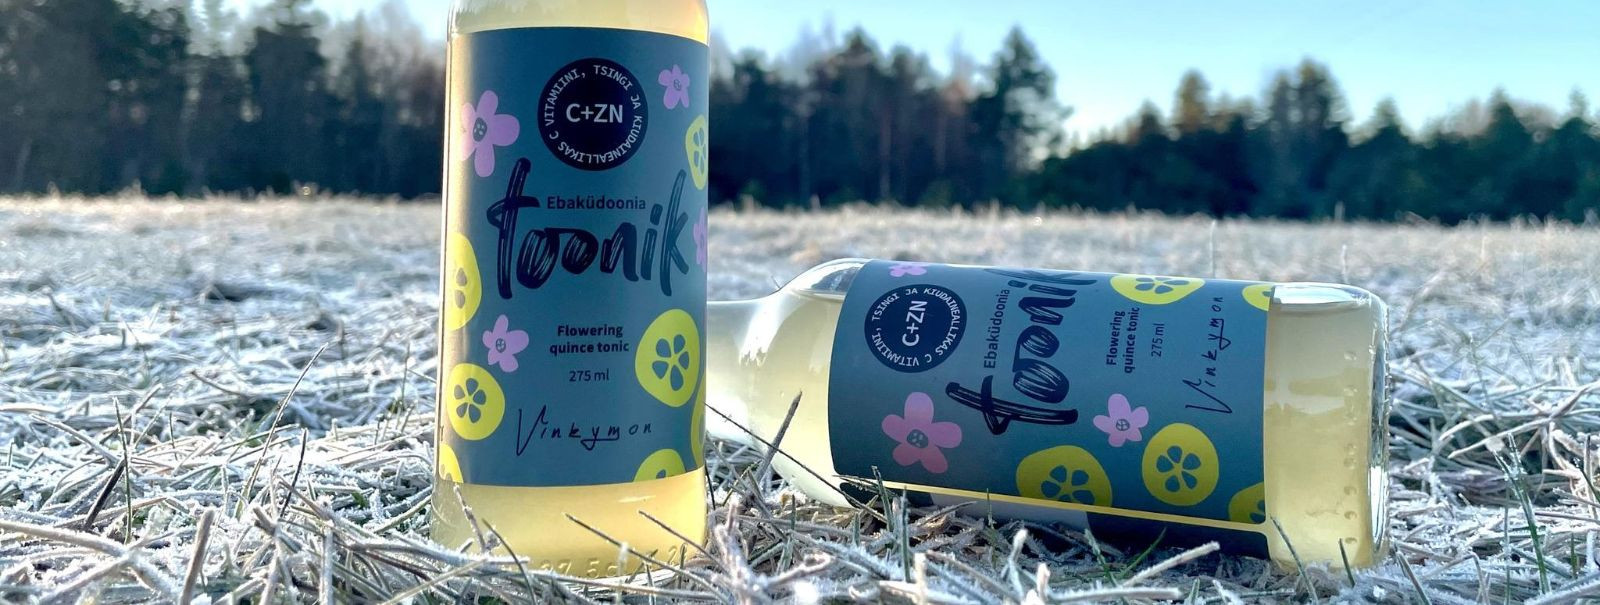 Vinkymon OÜ tutvustab uhkusega oma eksklusiivset limonaadivalikut, ...